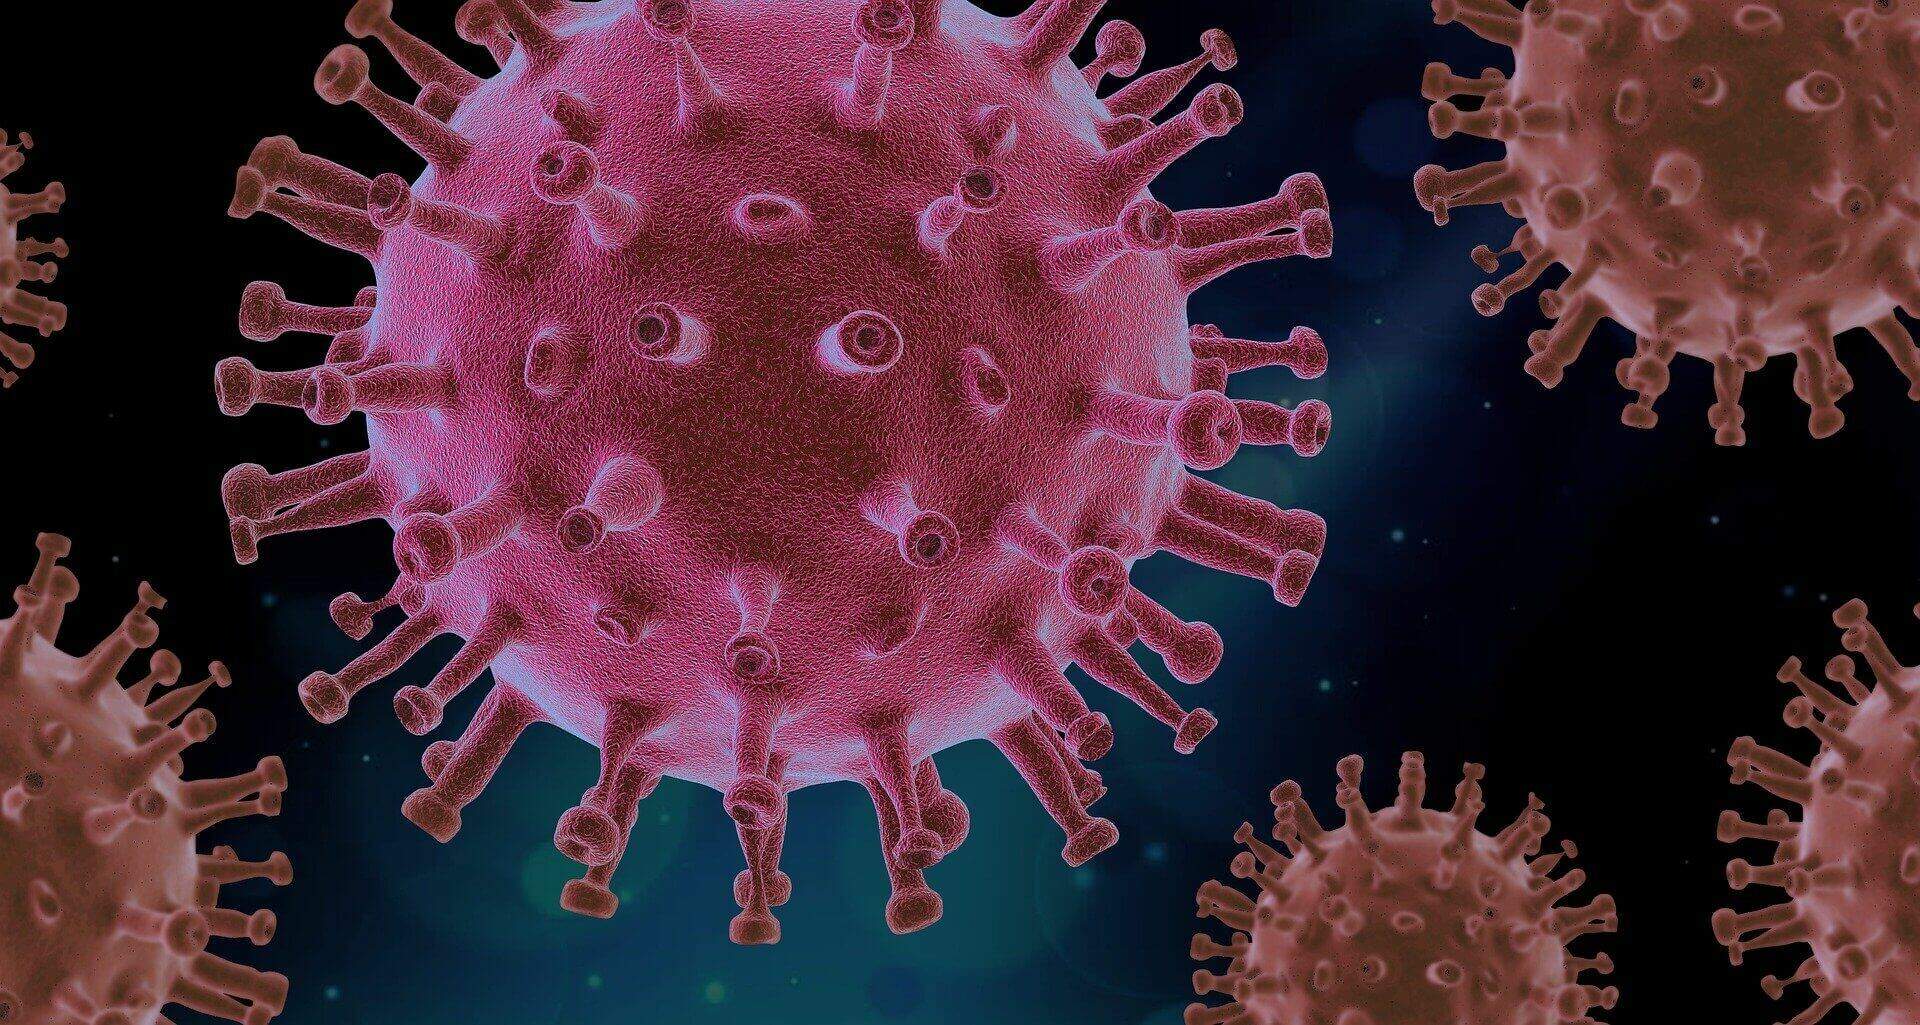 Na imagem, o novo coronavirus. Conteúdo "como surge um novo vírus"